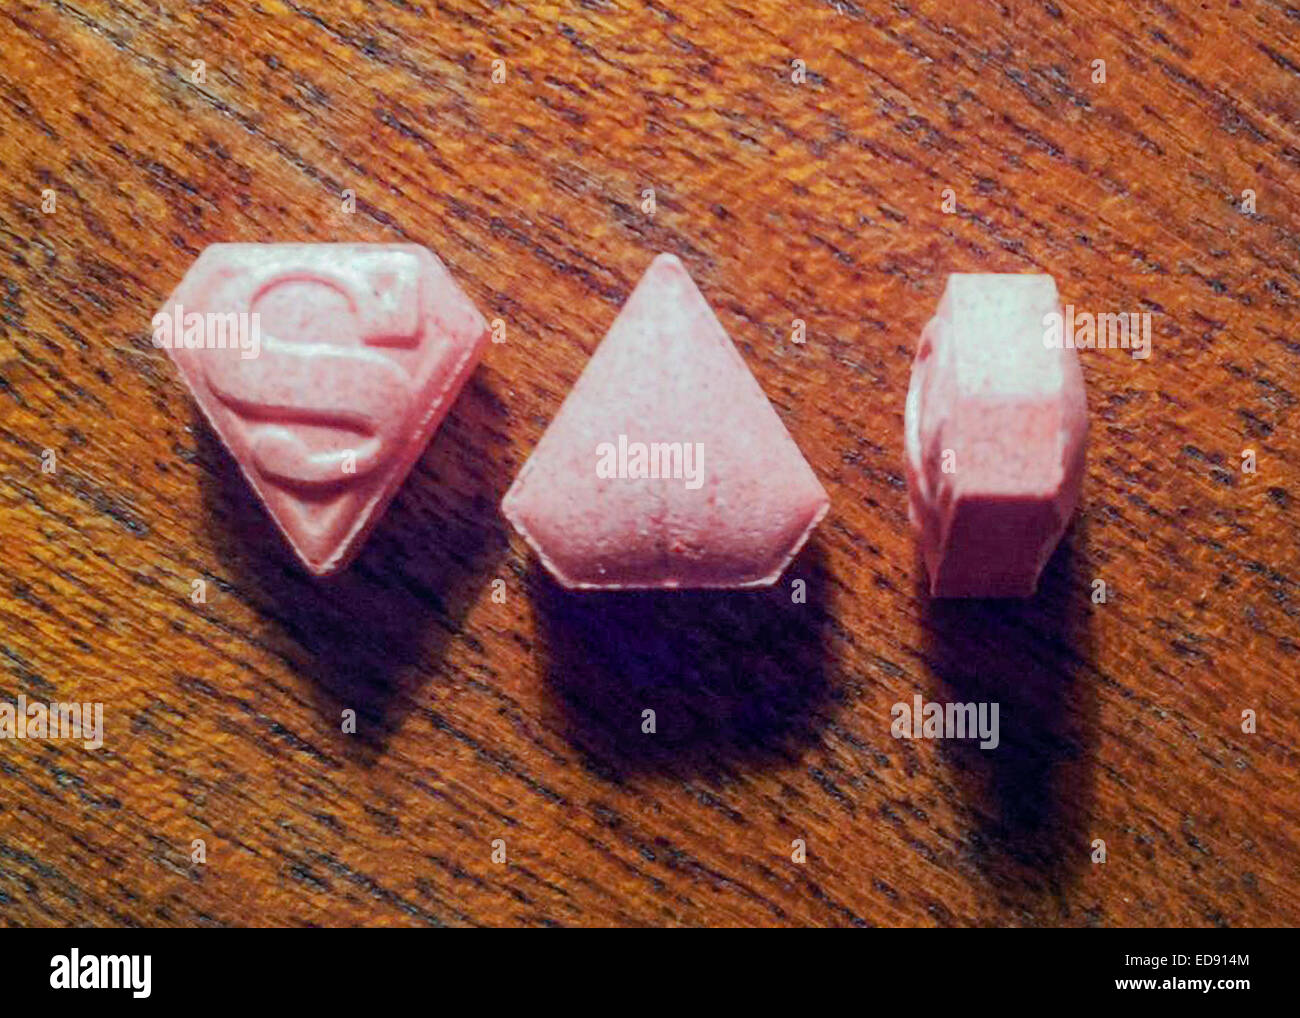 Gefälschte Ecstasy-Pillen bekannt als "Pink Superman" mit PMMA für  mindestens 4 Todesfälle verantwortlich. Siehe Beschreibung für mehr  Informationen Stockfotografie - Alamy